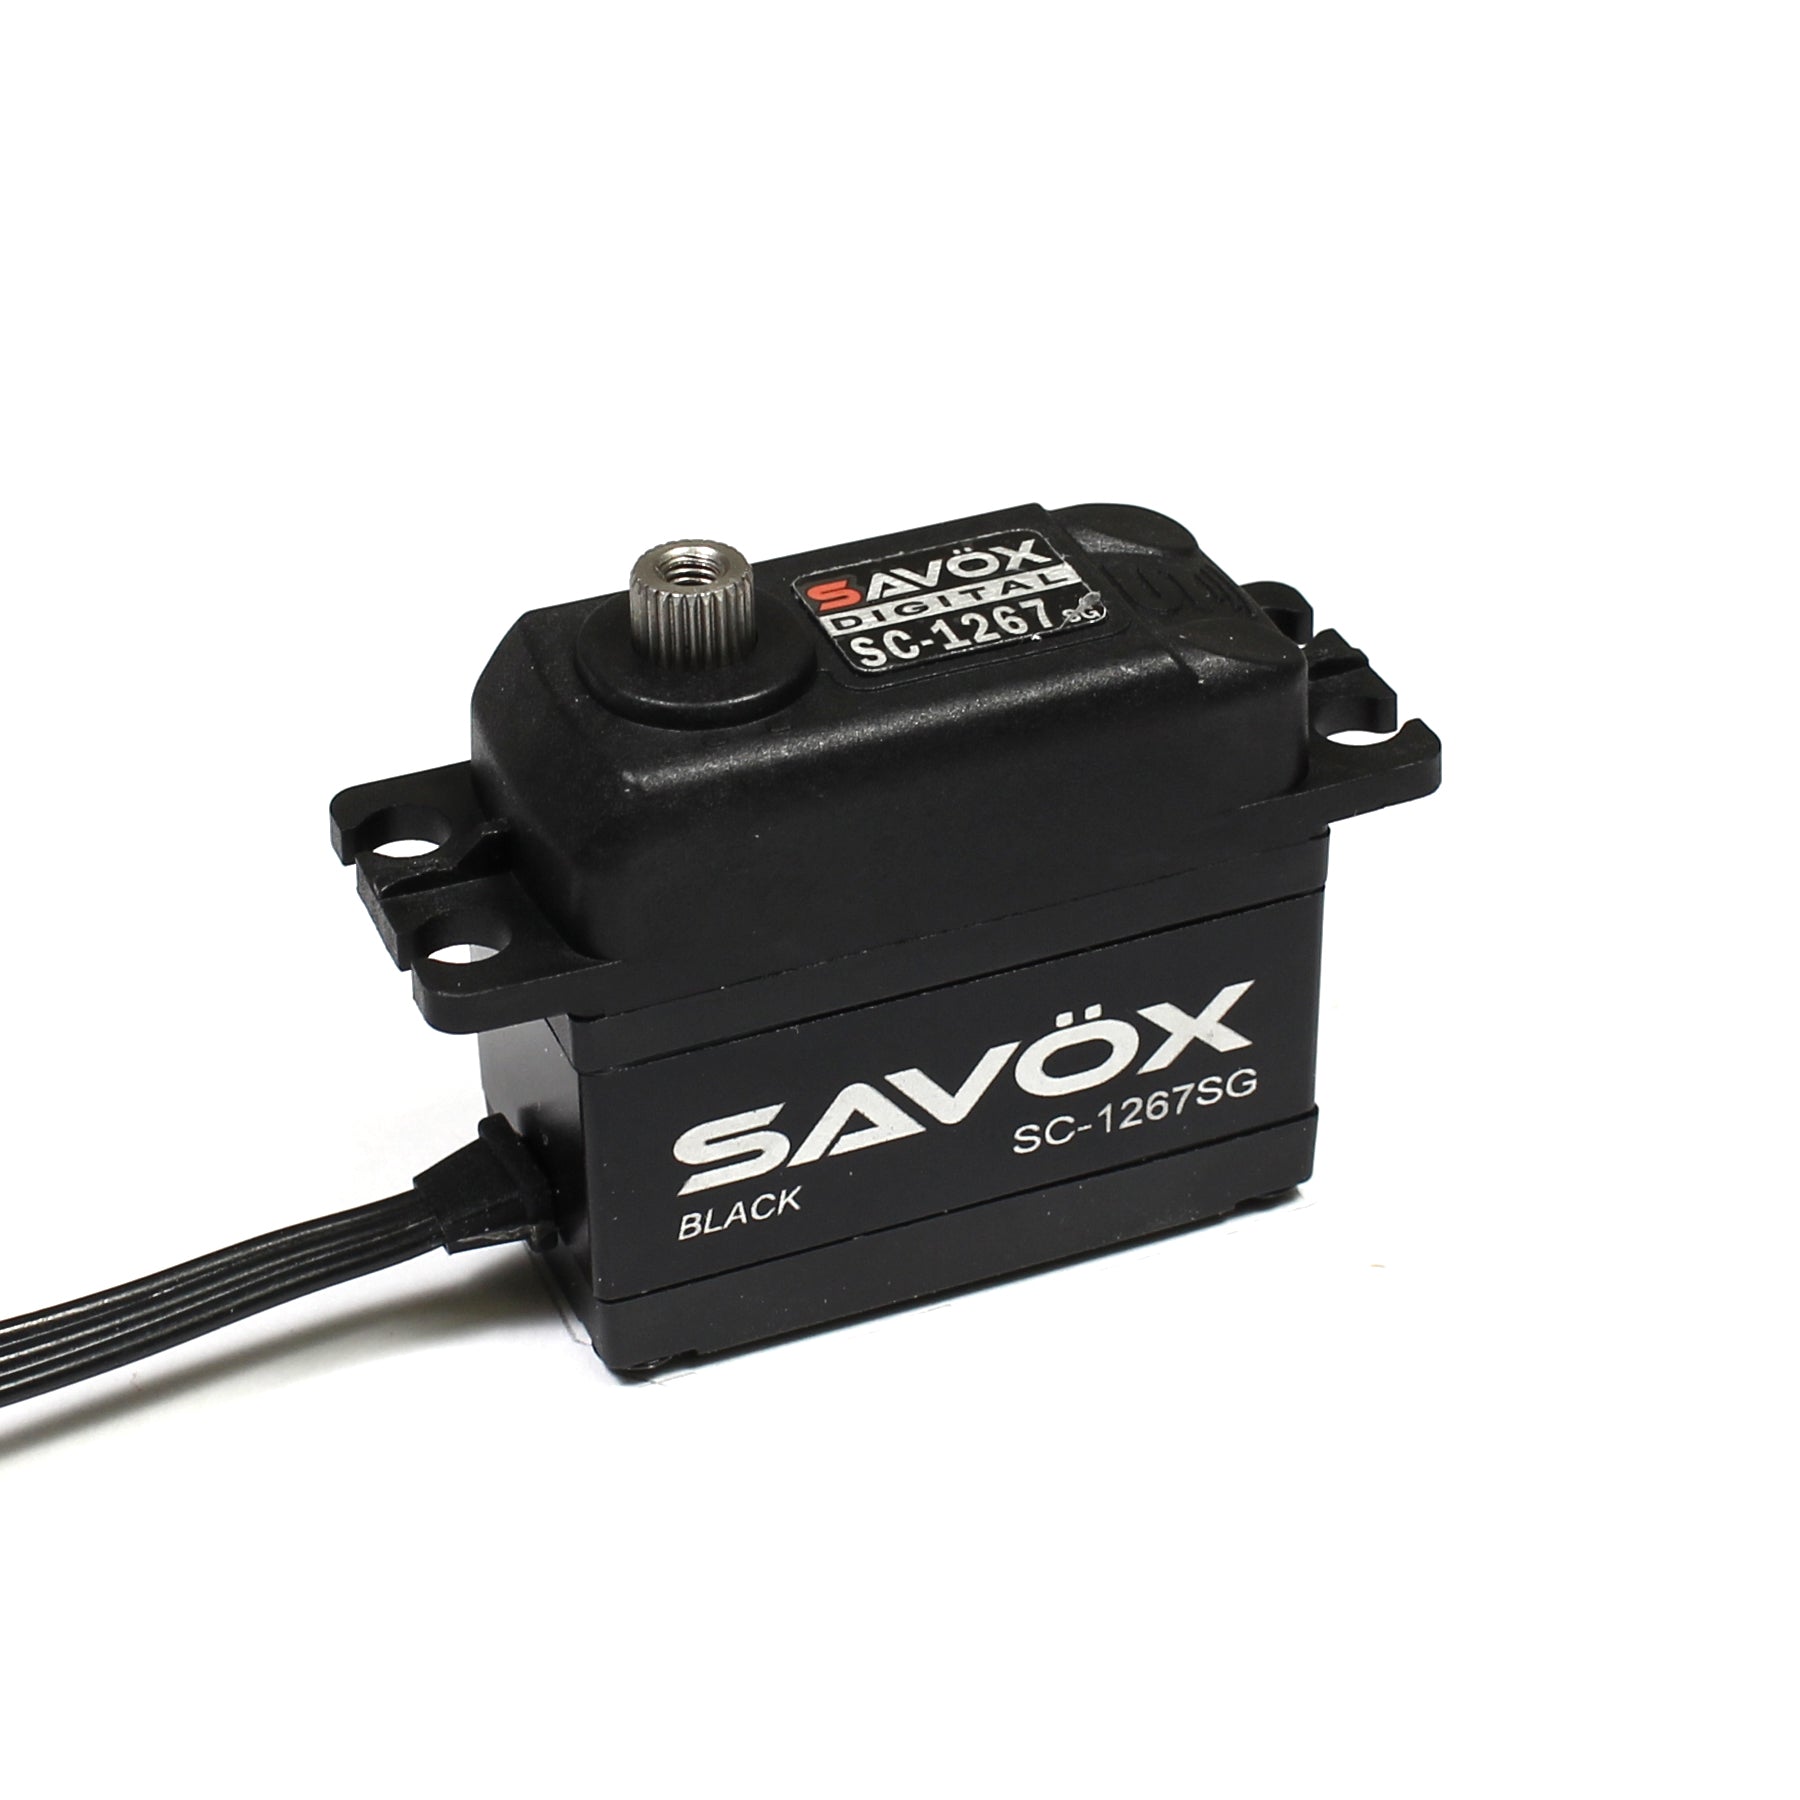 Savox SC-1267SG Black Edition Super Speed Steel Gear Servo (High Voltage)